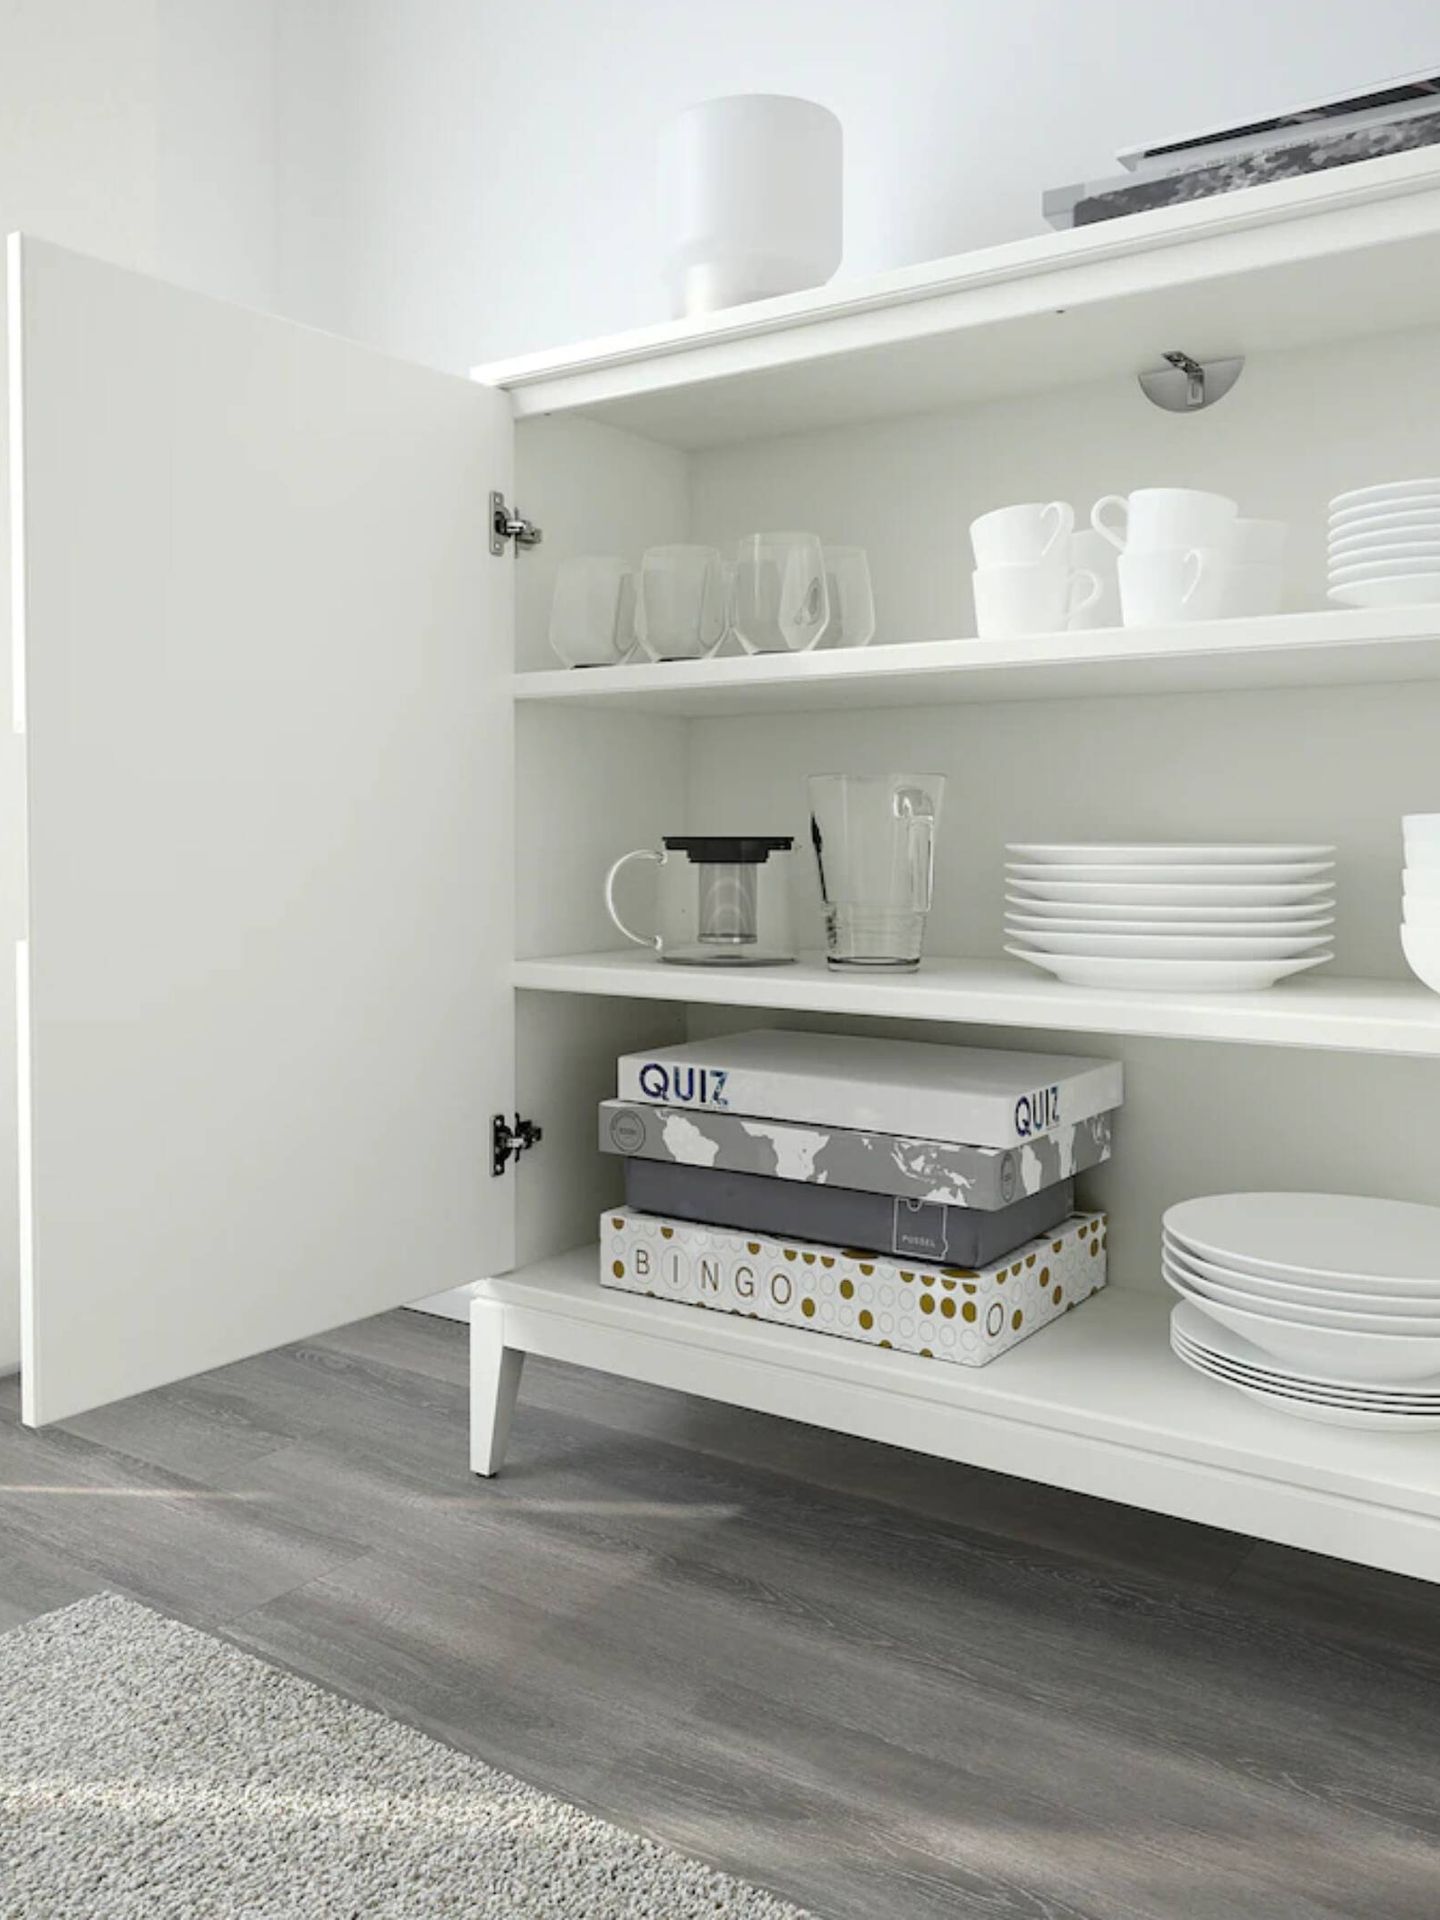 Descubre el mueble de Ikea ideal para casas coquetas. (Cortesía)